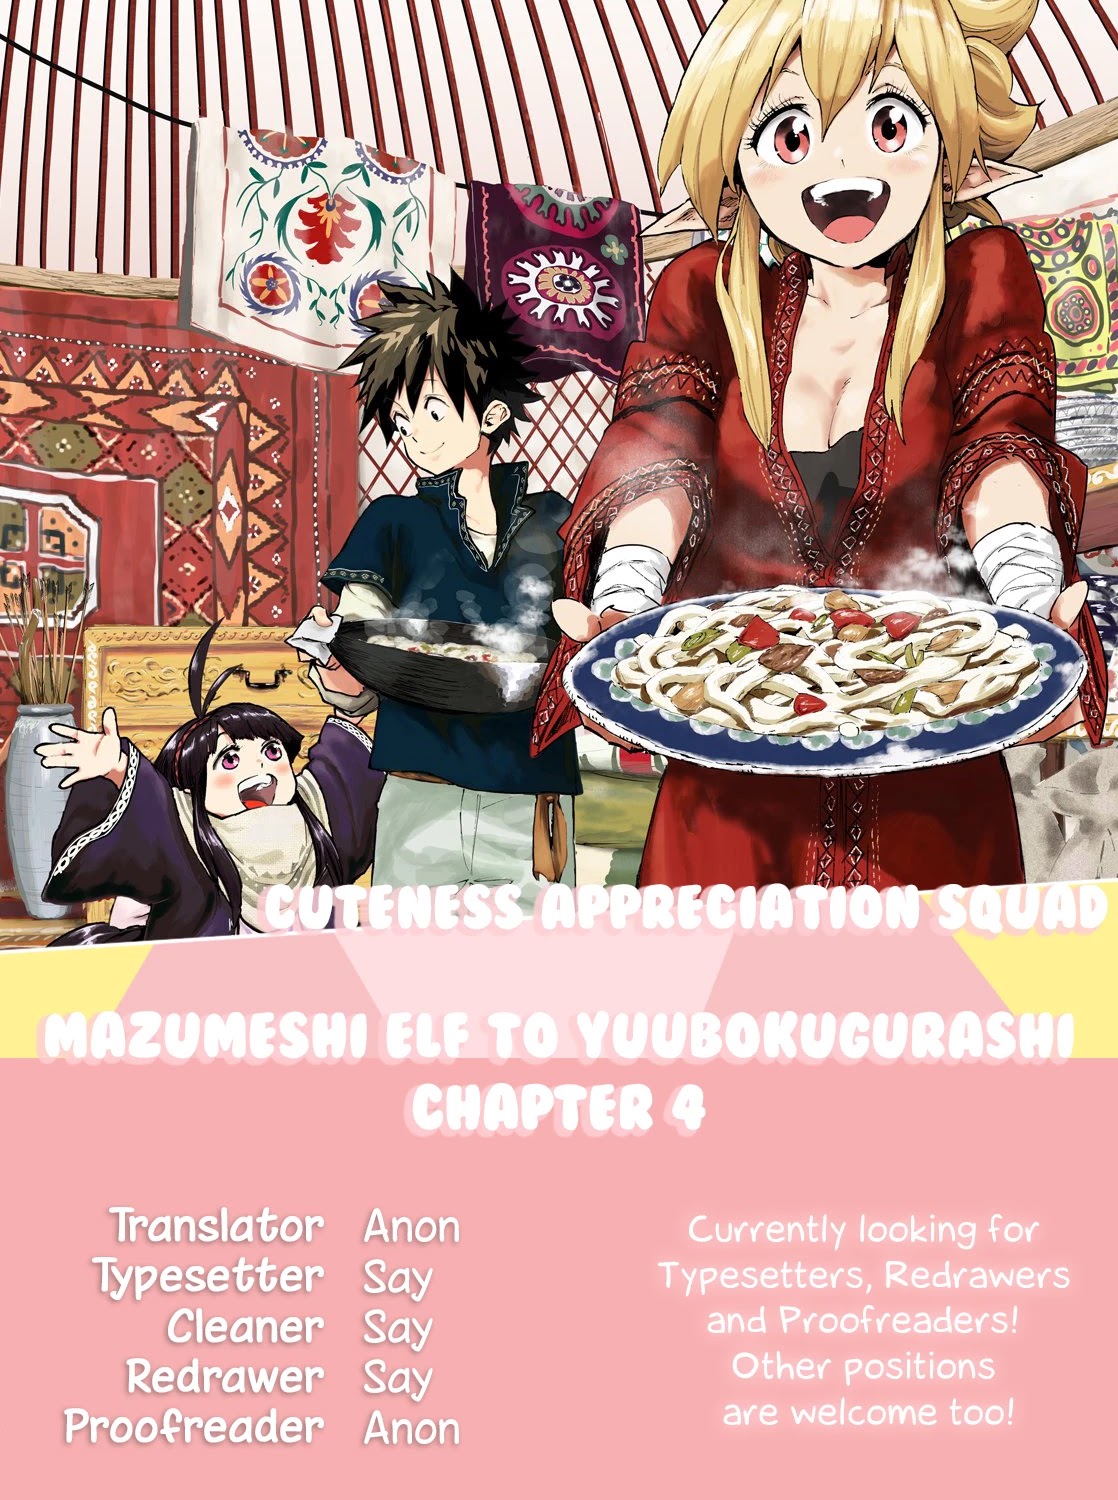 Mazumeshi Elf To Youbokugurashi Chapter 4